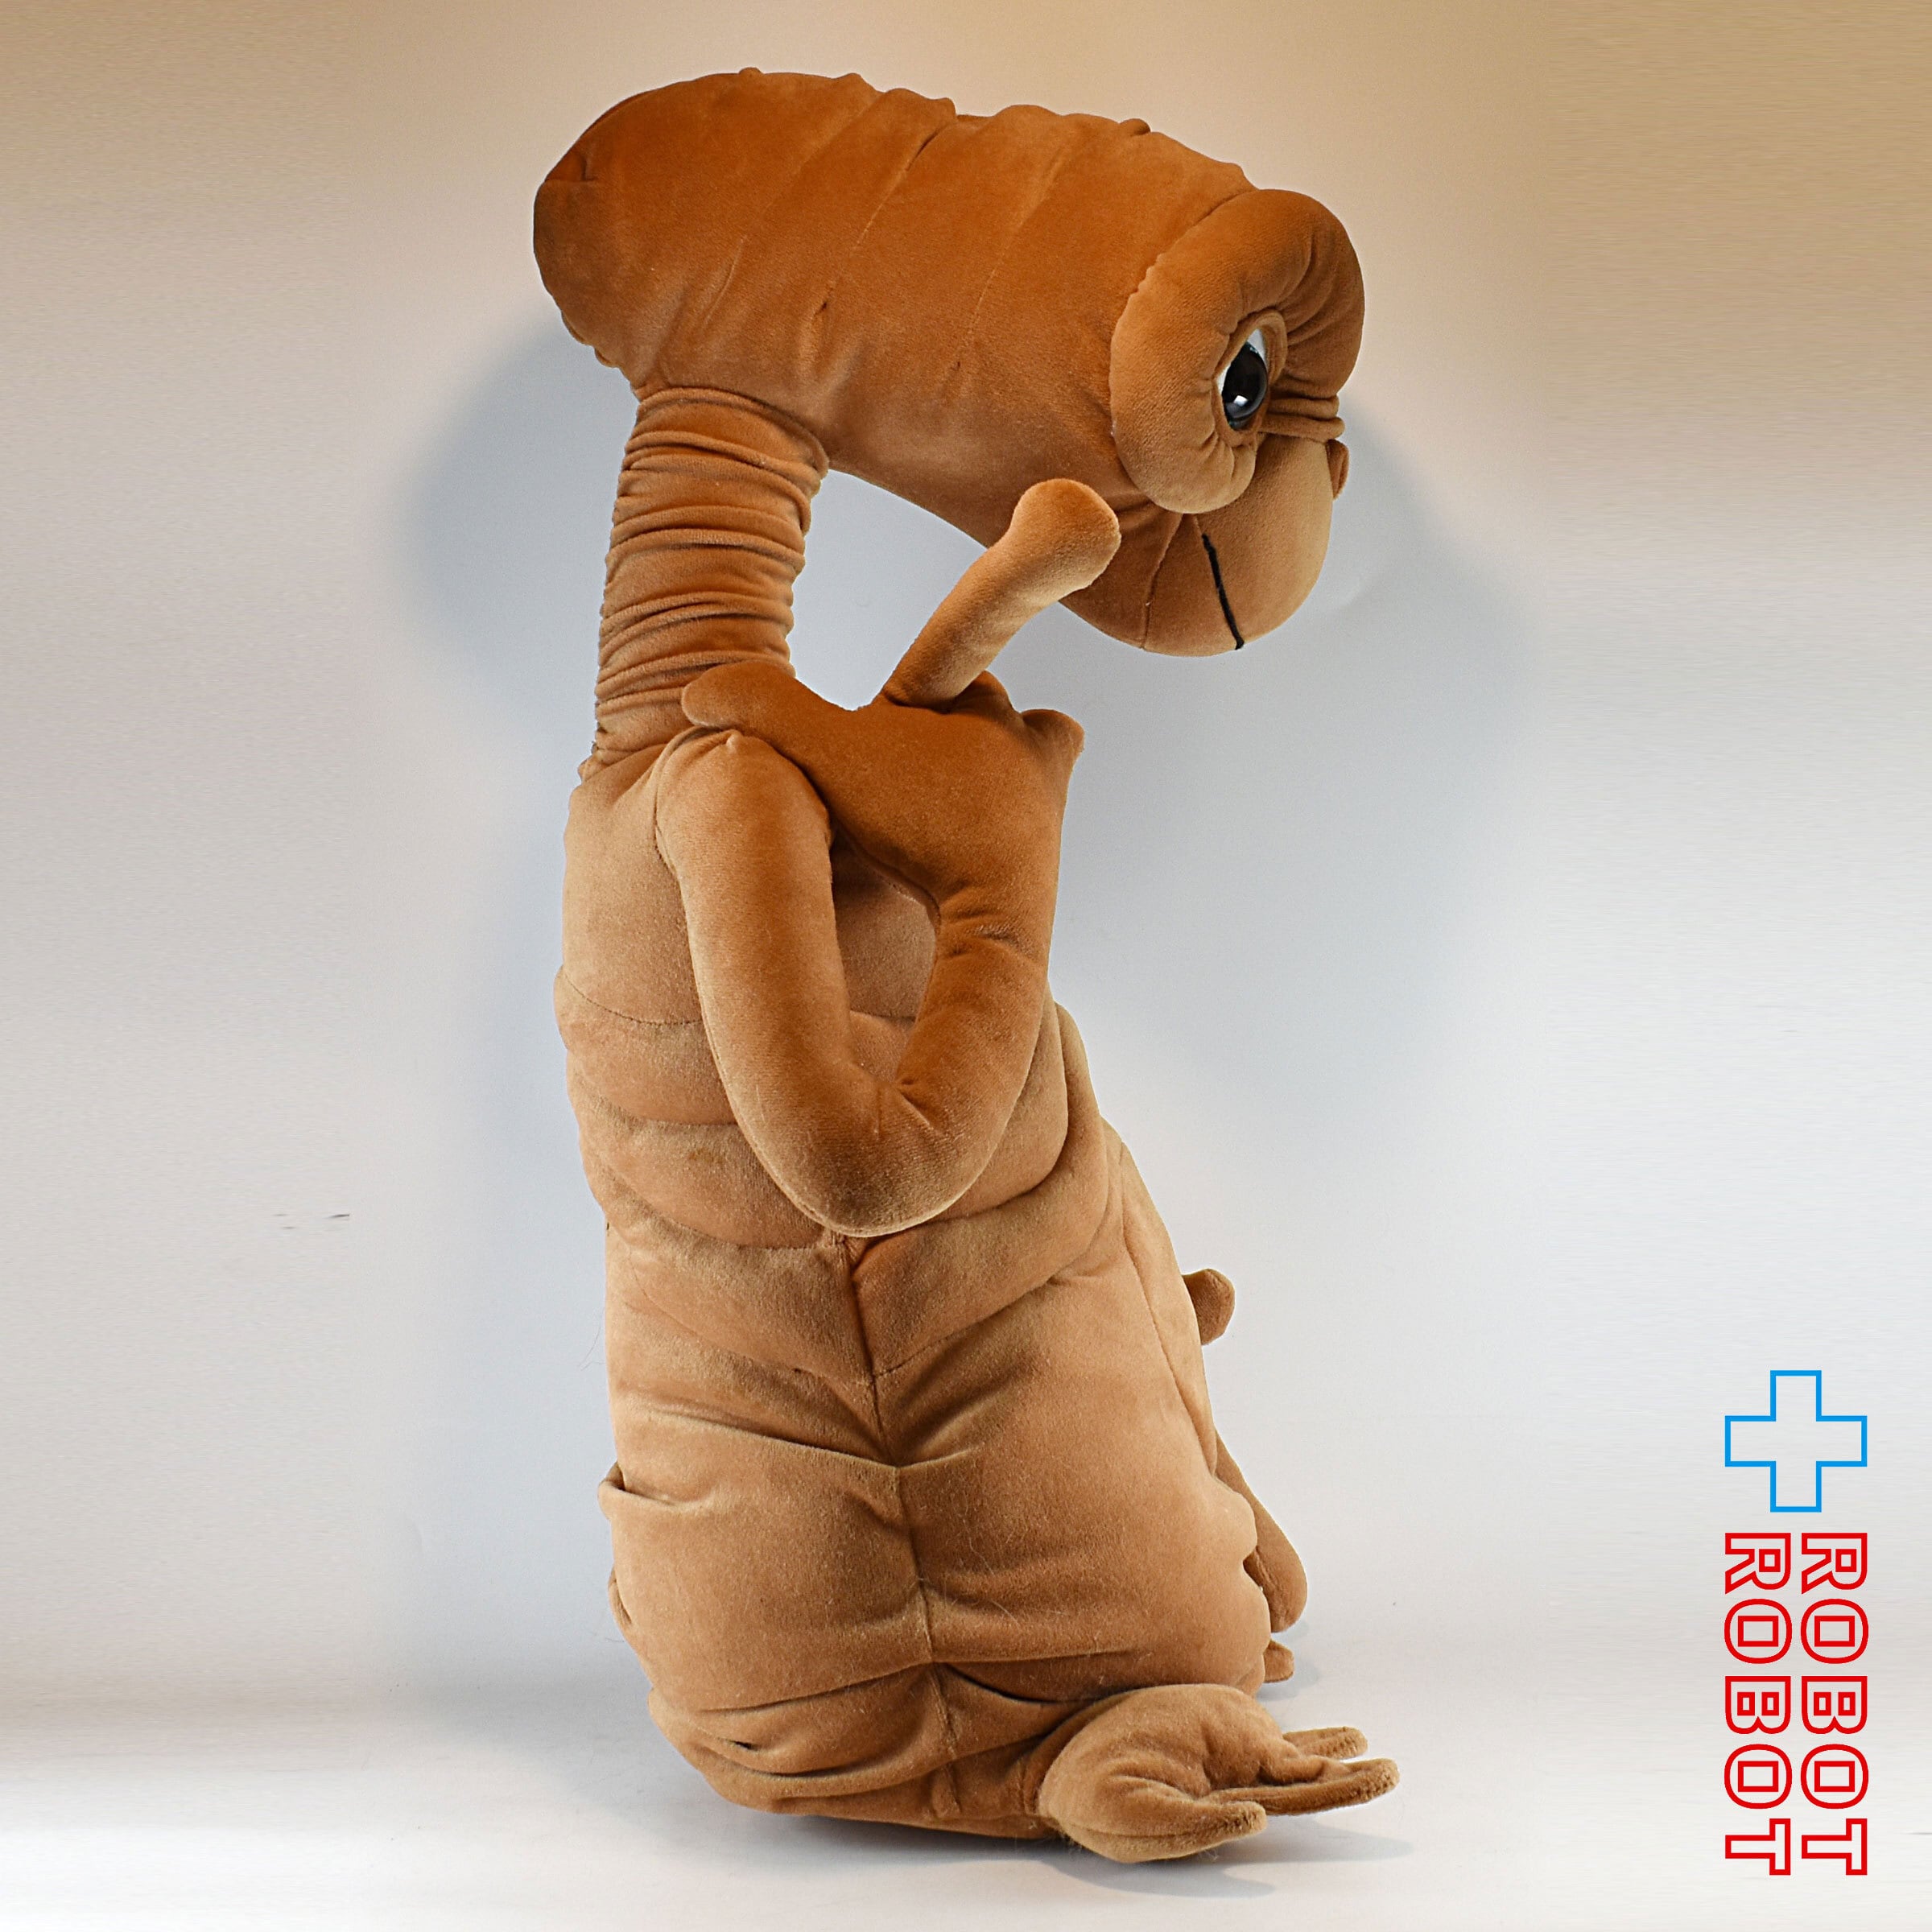 喋る 光る E.T. トイザらス トーキング ぬいぐるみ30cm 人形 玩具 